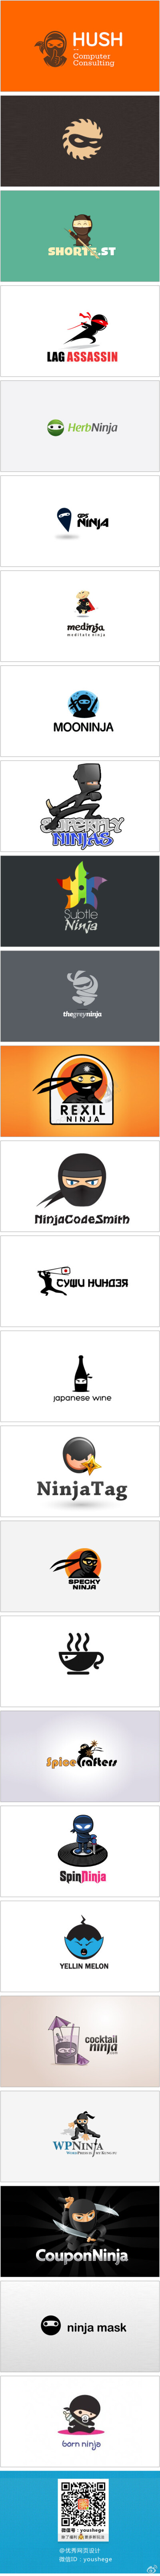  【早安Logo！一组忍者元素的Logo设计】在优设哥的粉丝中，偶尔会看到一些酷酷的设计师用忍者来做自己的头像。今天可以来这一组logo中学习更多的表现手法了哟！@啧潴要穷游四方哈哈 更多创意Logo请戳→http://t.cn/z…